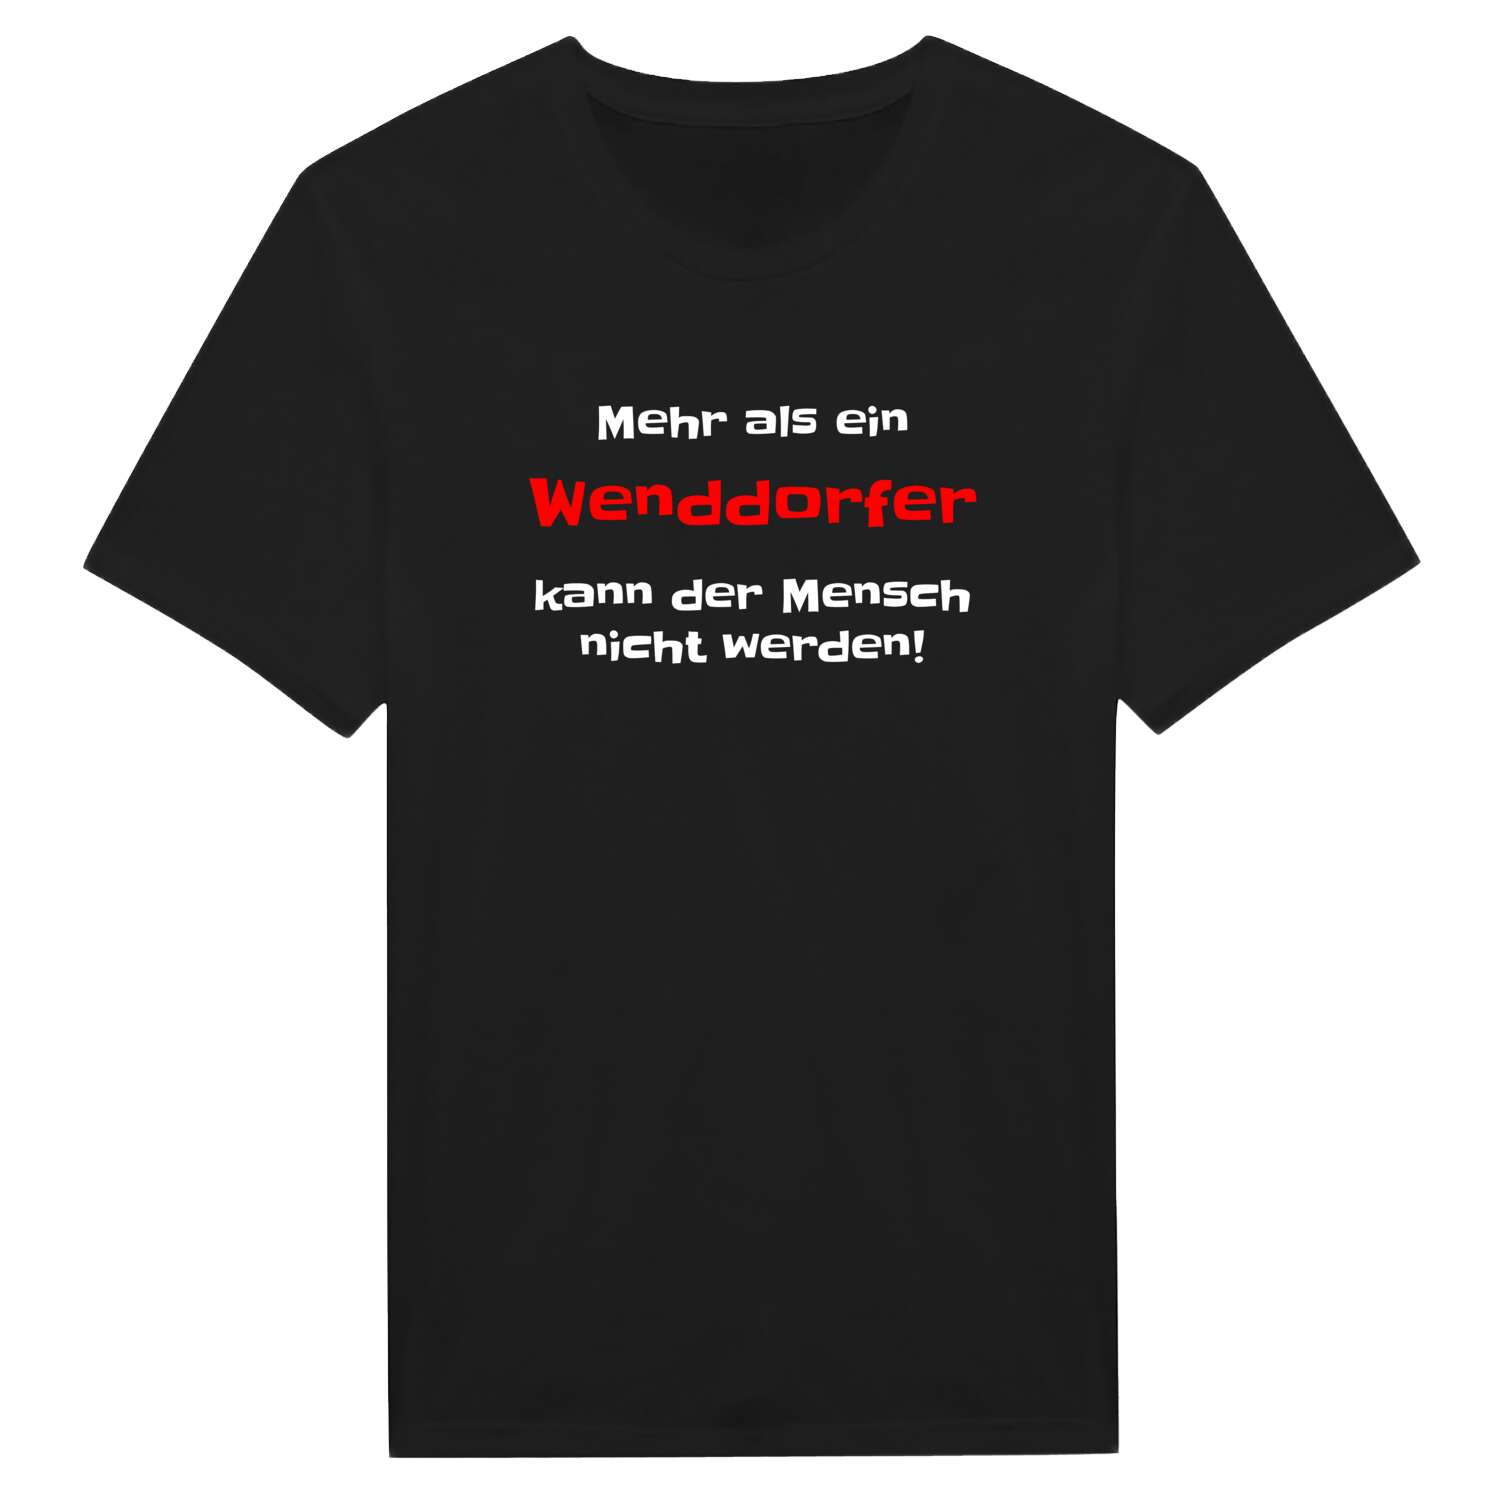 Wenddorf T-Shirt »Mehr als ein«